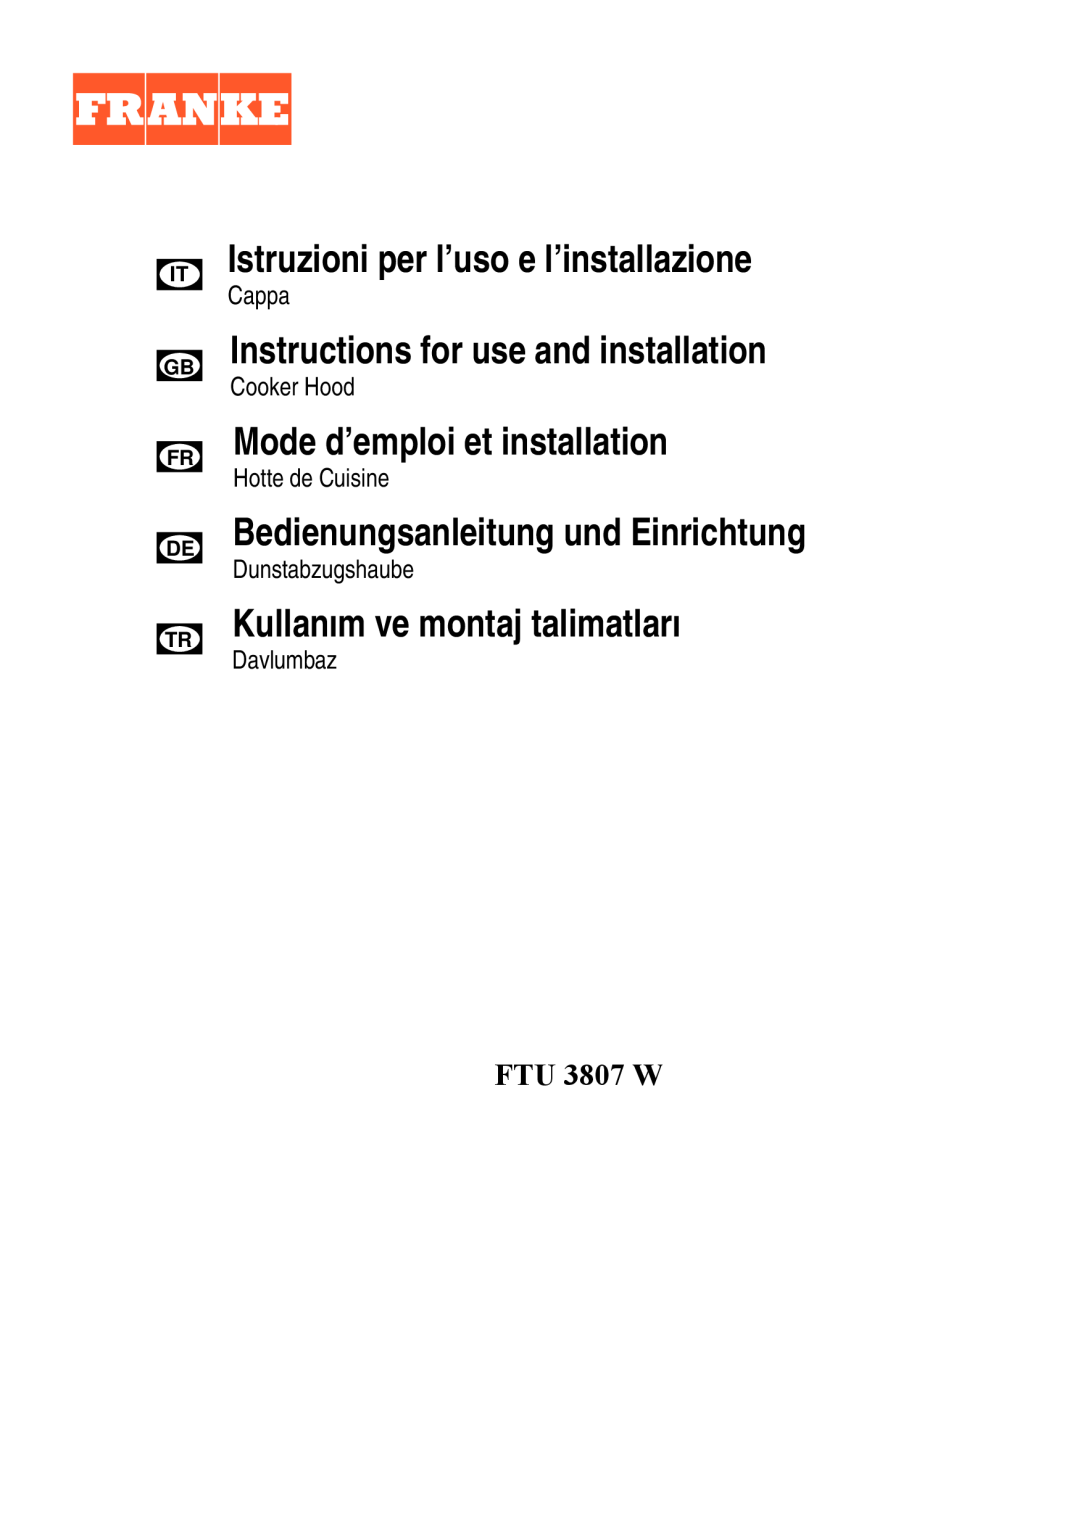 Franke Consumer Products FTU 3807 W manual Istruzioni per l’uso e l’installazione, Instructions for use and installation 